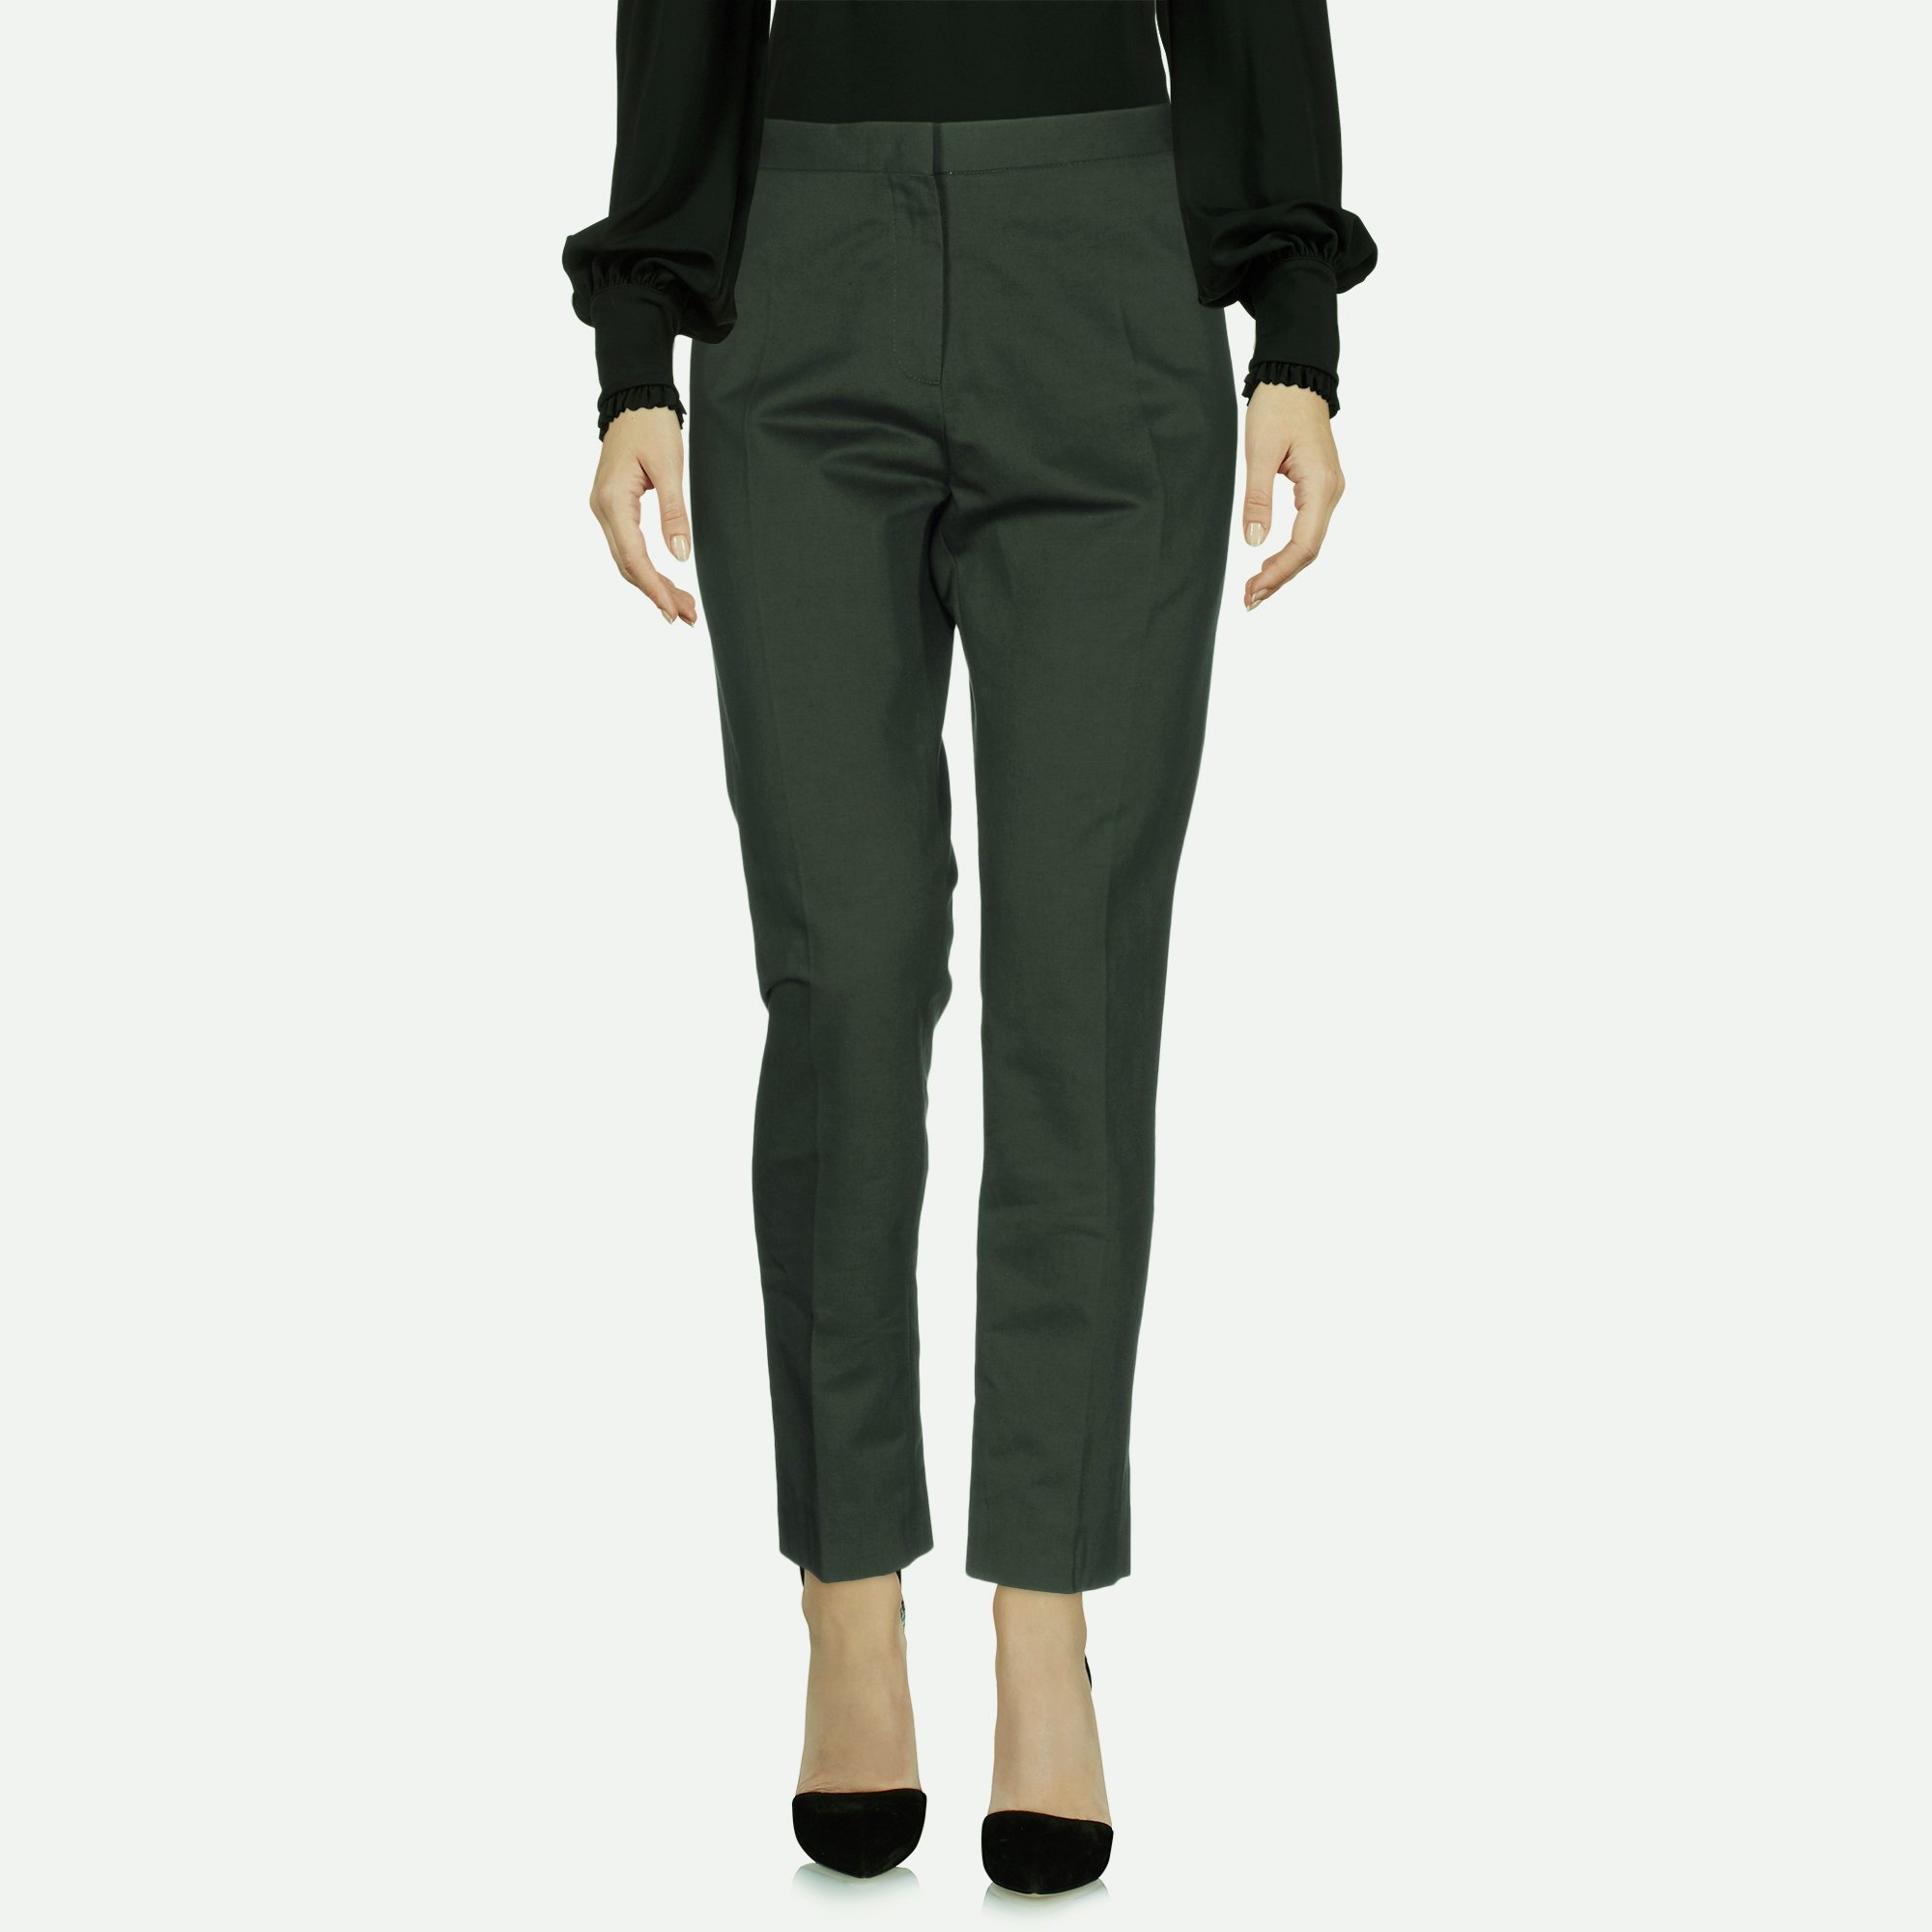 Marni khaki green gabardine trousers size 38